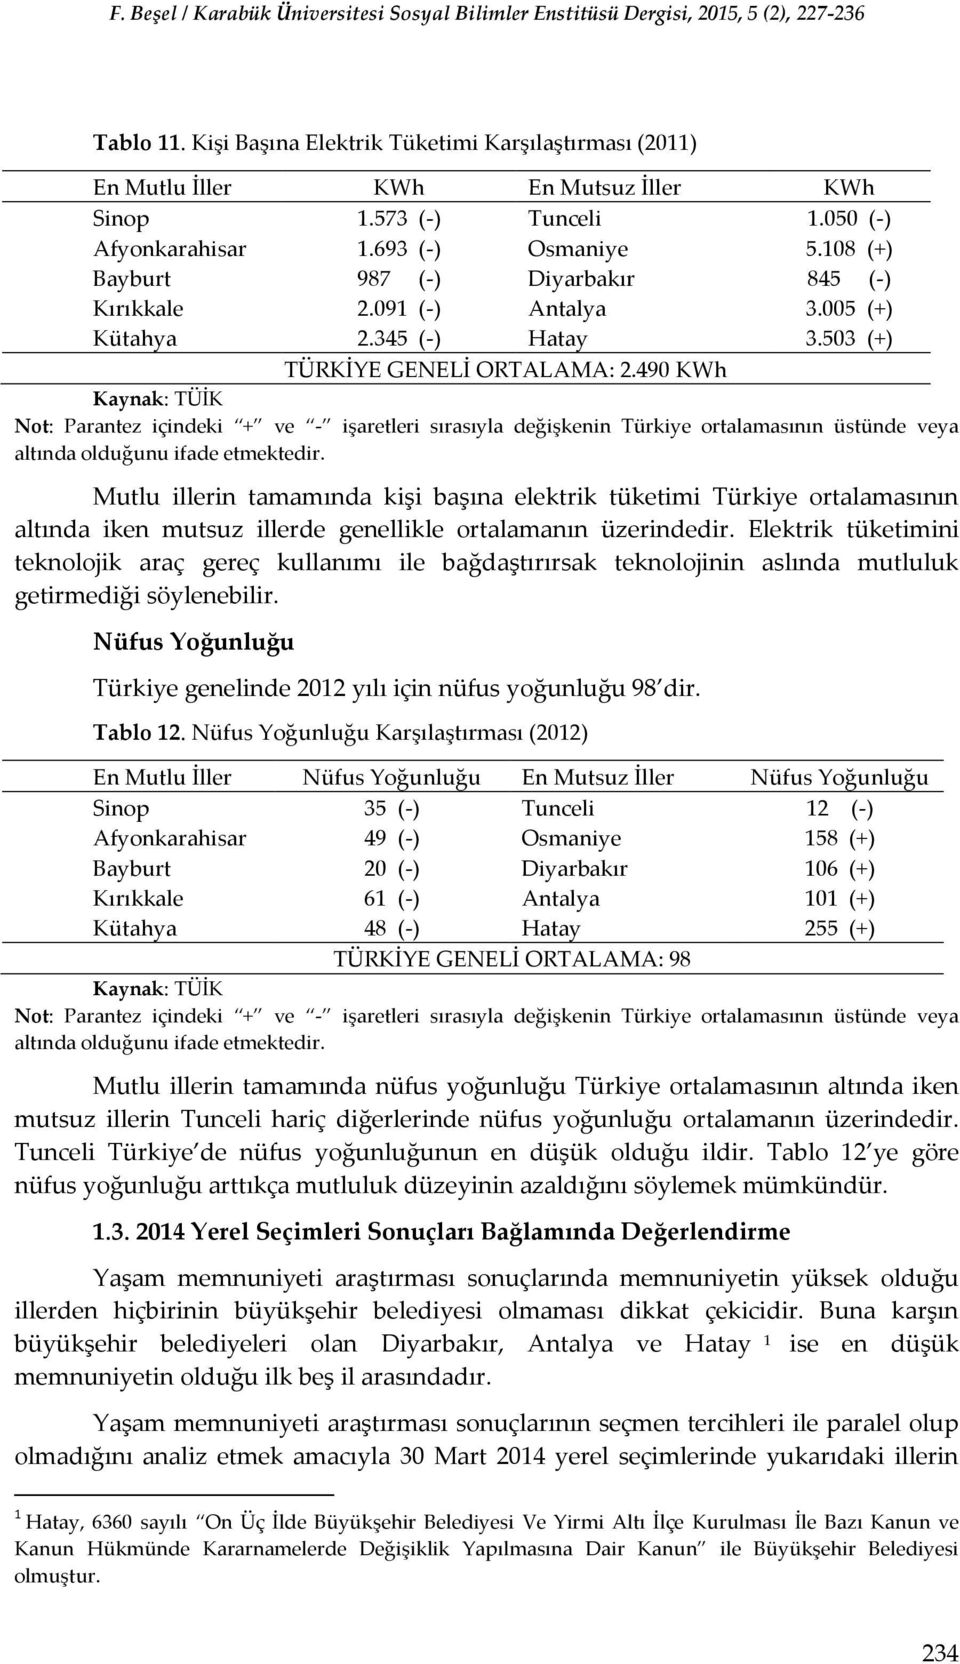 490 KWh Mutlu illerin tamamında kişi başına elektrik tüketimi Türkiye ortalamasının altında iken mutsuz illerde genellikle ortalamanın üzerindedir.